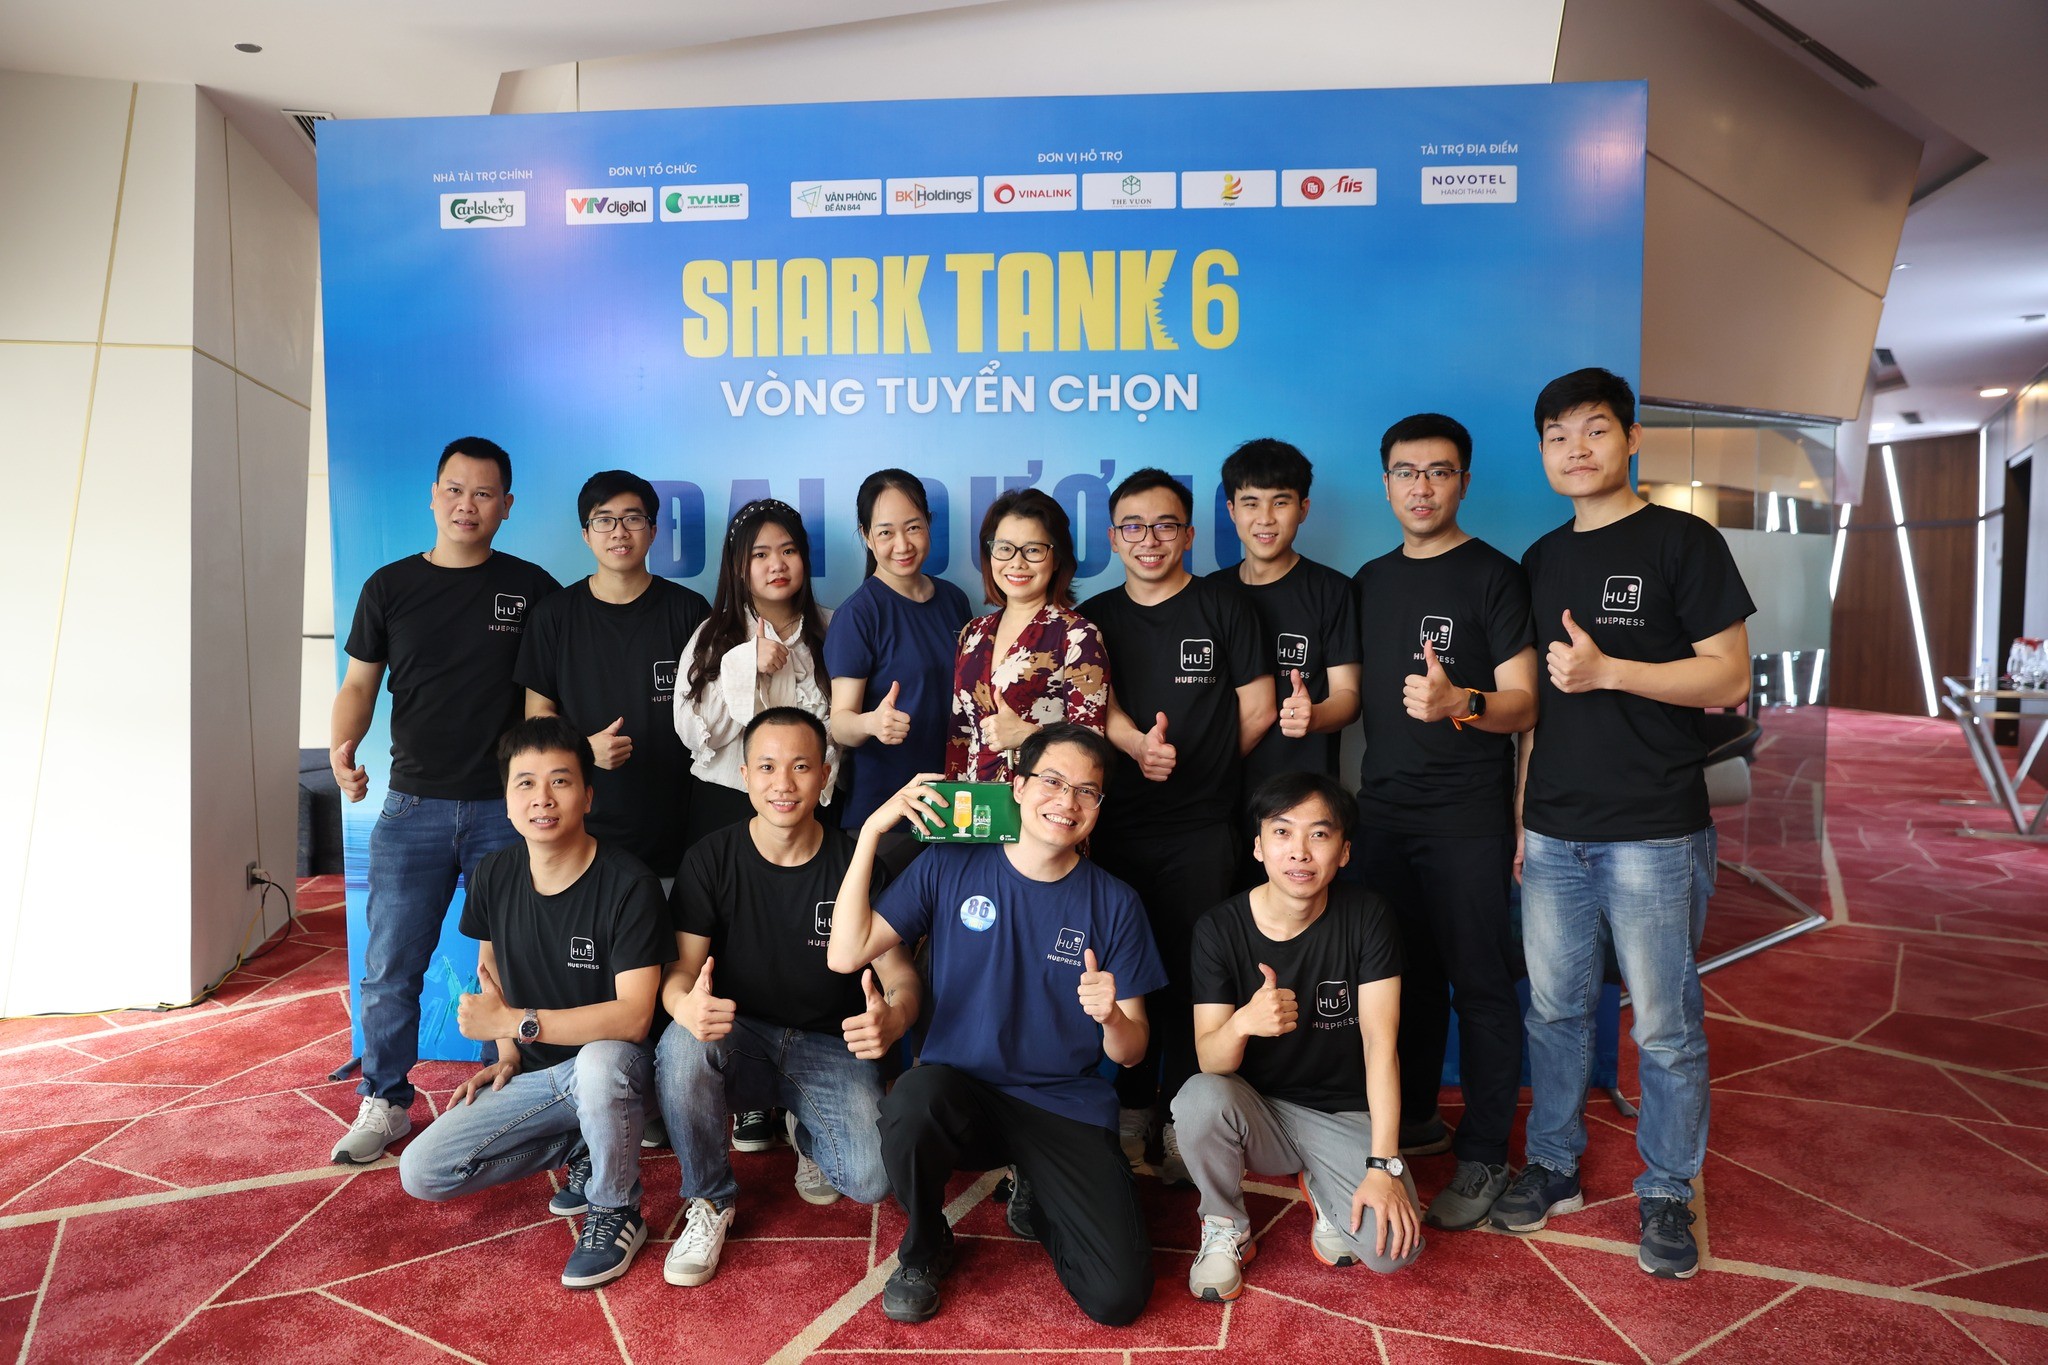 CEO Nguyễn Văn Tràng và các cộng sự gây ấn tượng trong vòng tuyển chọn của chương trình Thương vụ bạc tỷ (Shark Tank) mùa 6